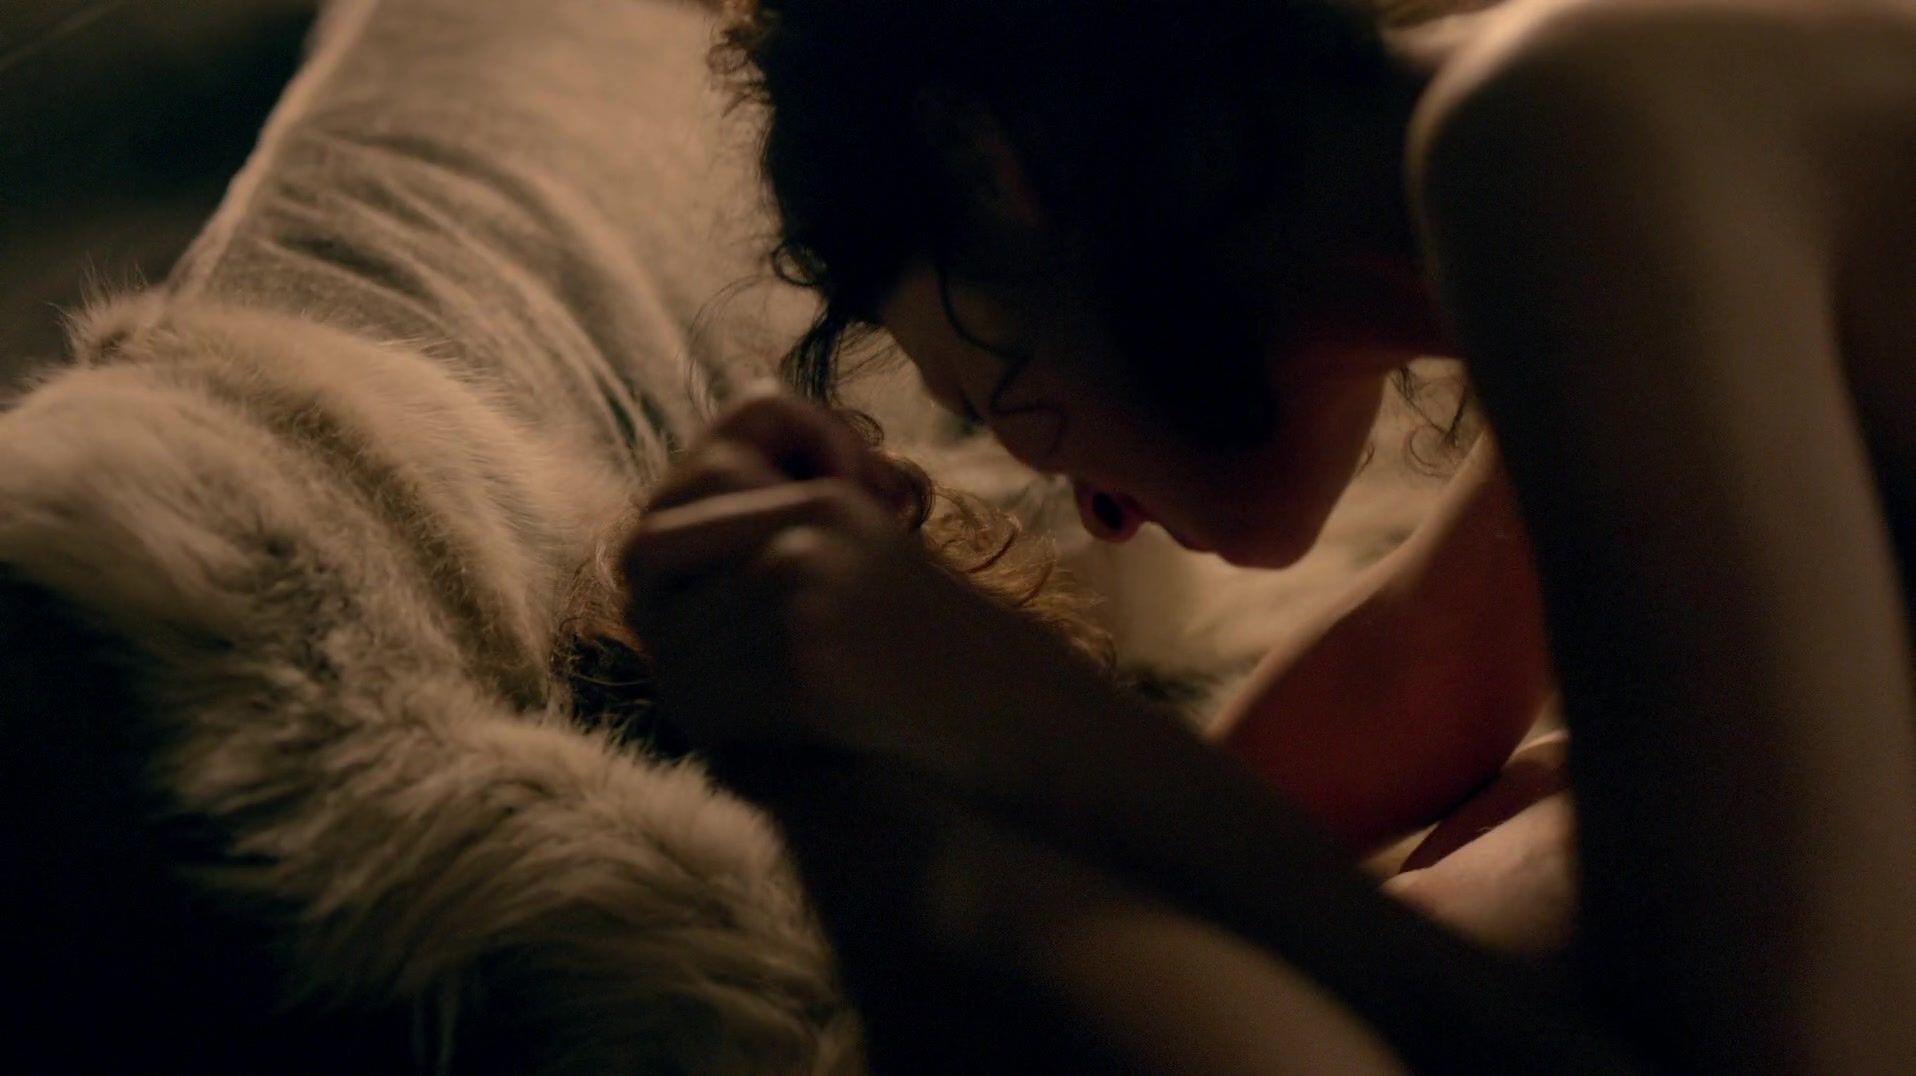 OnOff Sex scene of naked Caitriona Balfe | TV show "Outlander" Sister - 2